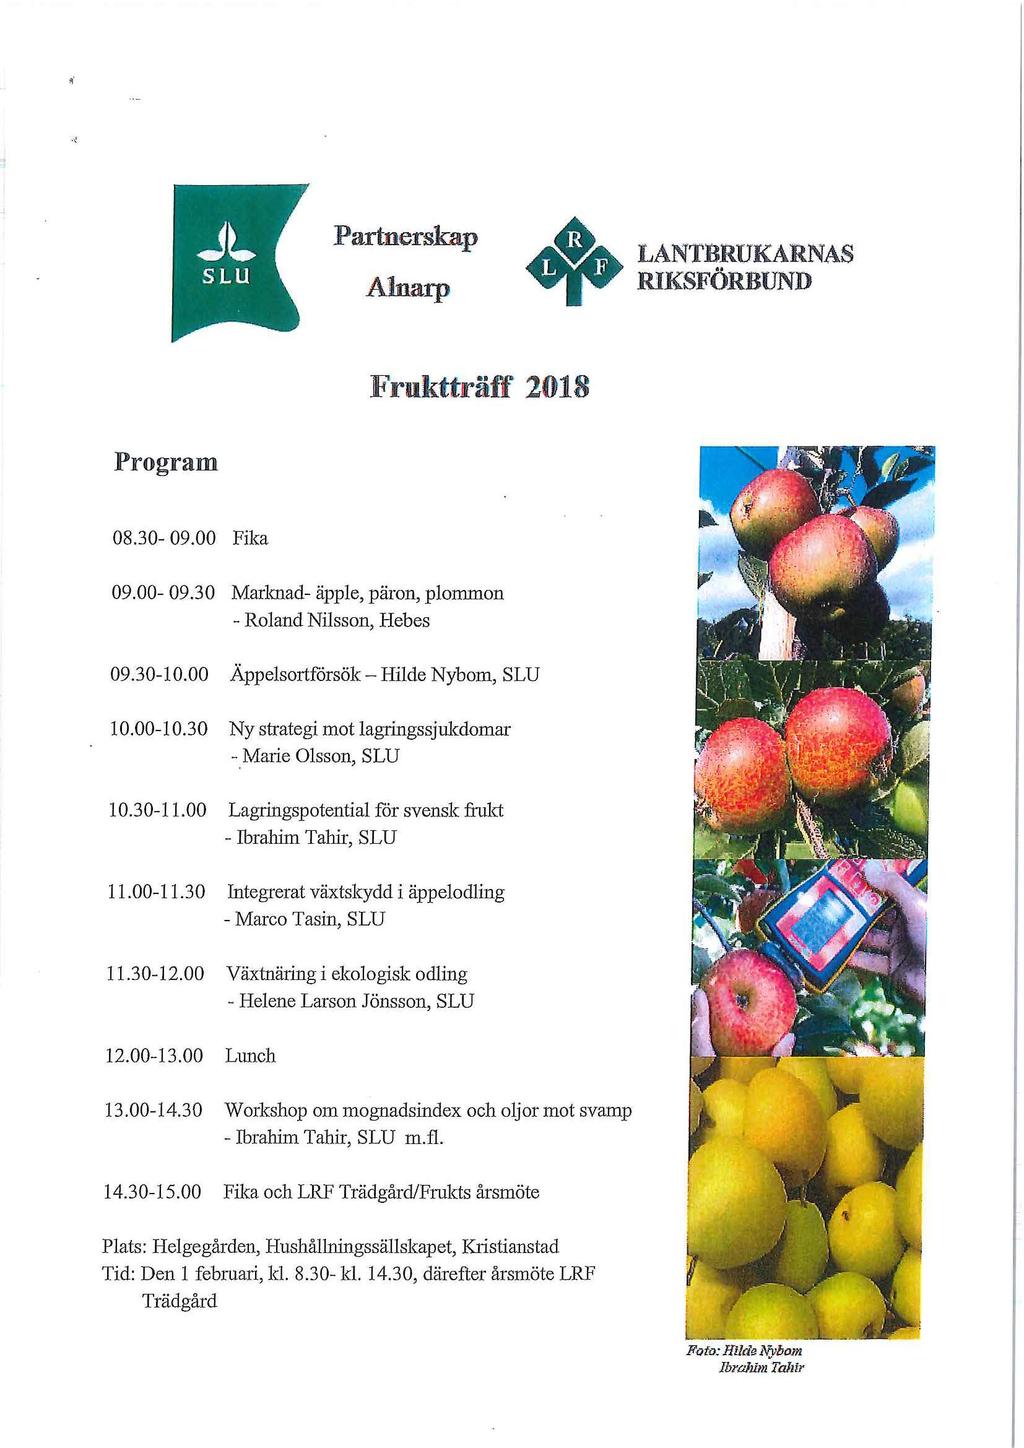 .. Partnerskap Alnarp LANTBRUKARNAS RIKSFORBUND Frukttraff 2018 Program 08.30-09.00 Fika 09.00-09.30 Marlmad- apple, paron, plommon - Roland Nilsson, Hebes 09.30-10.